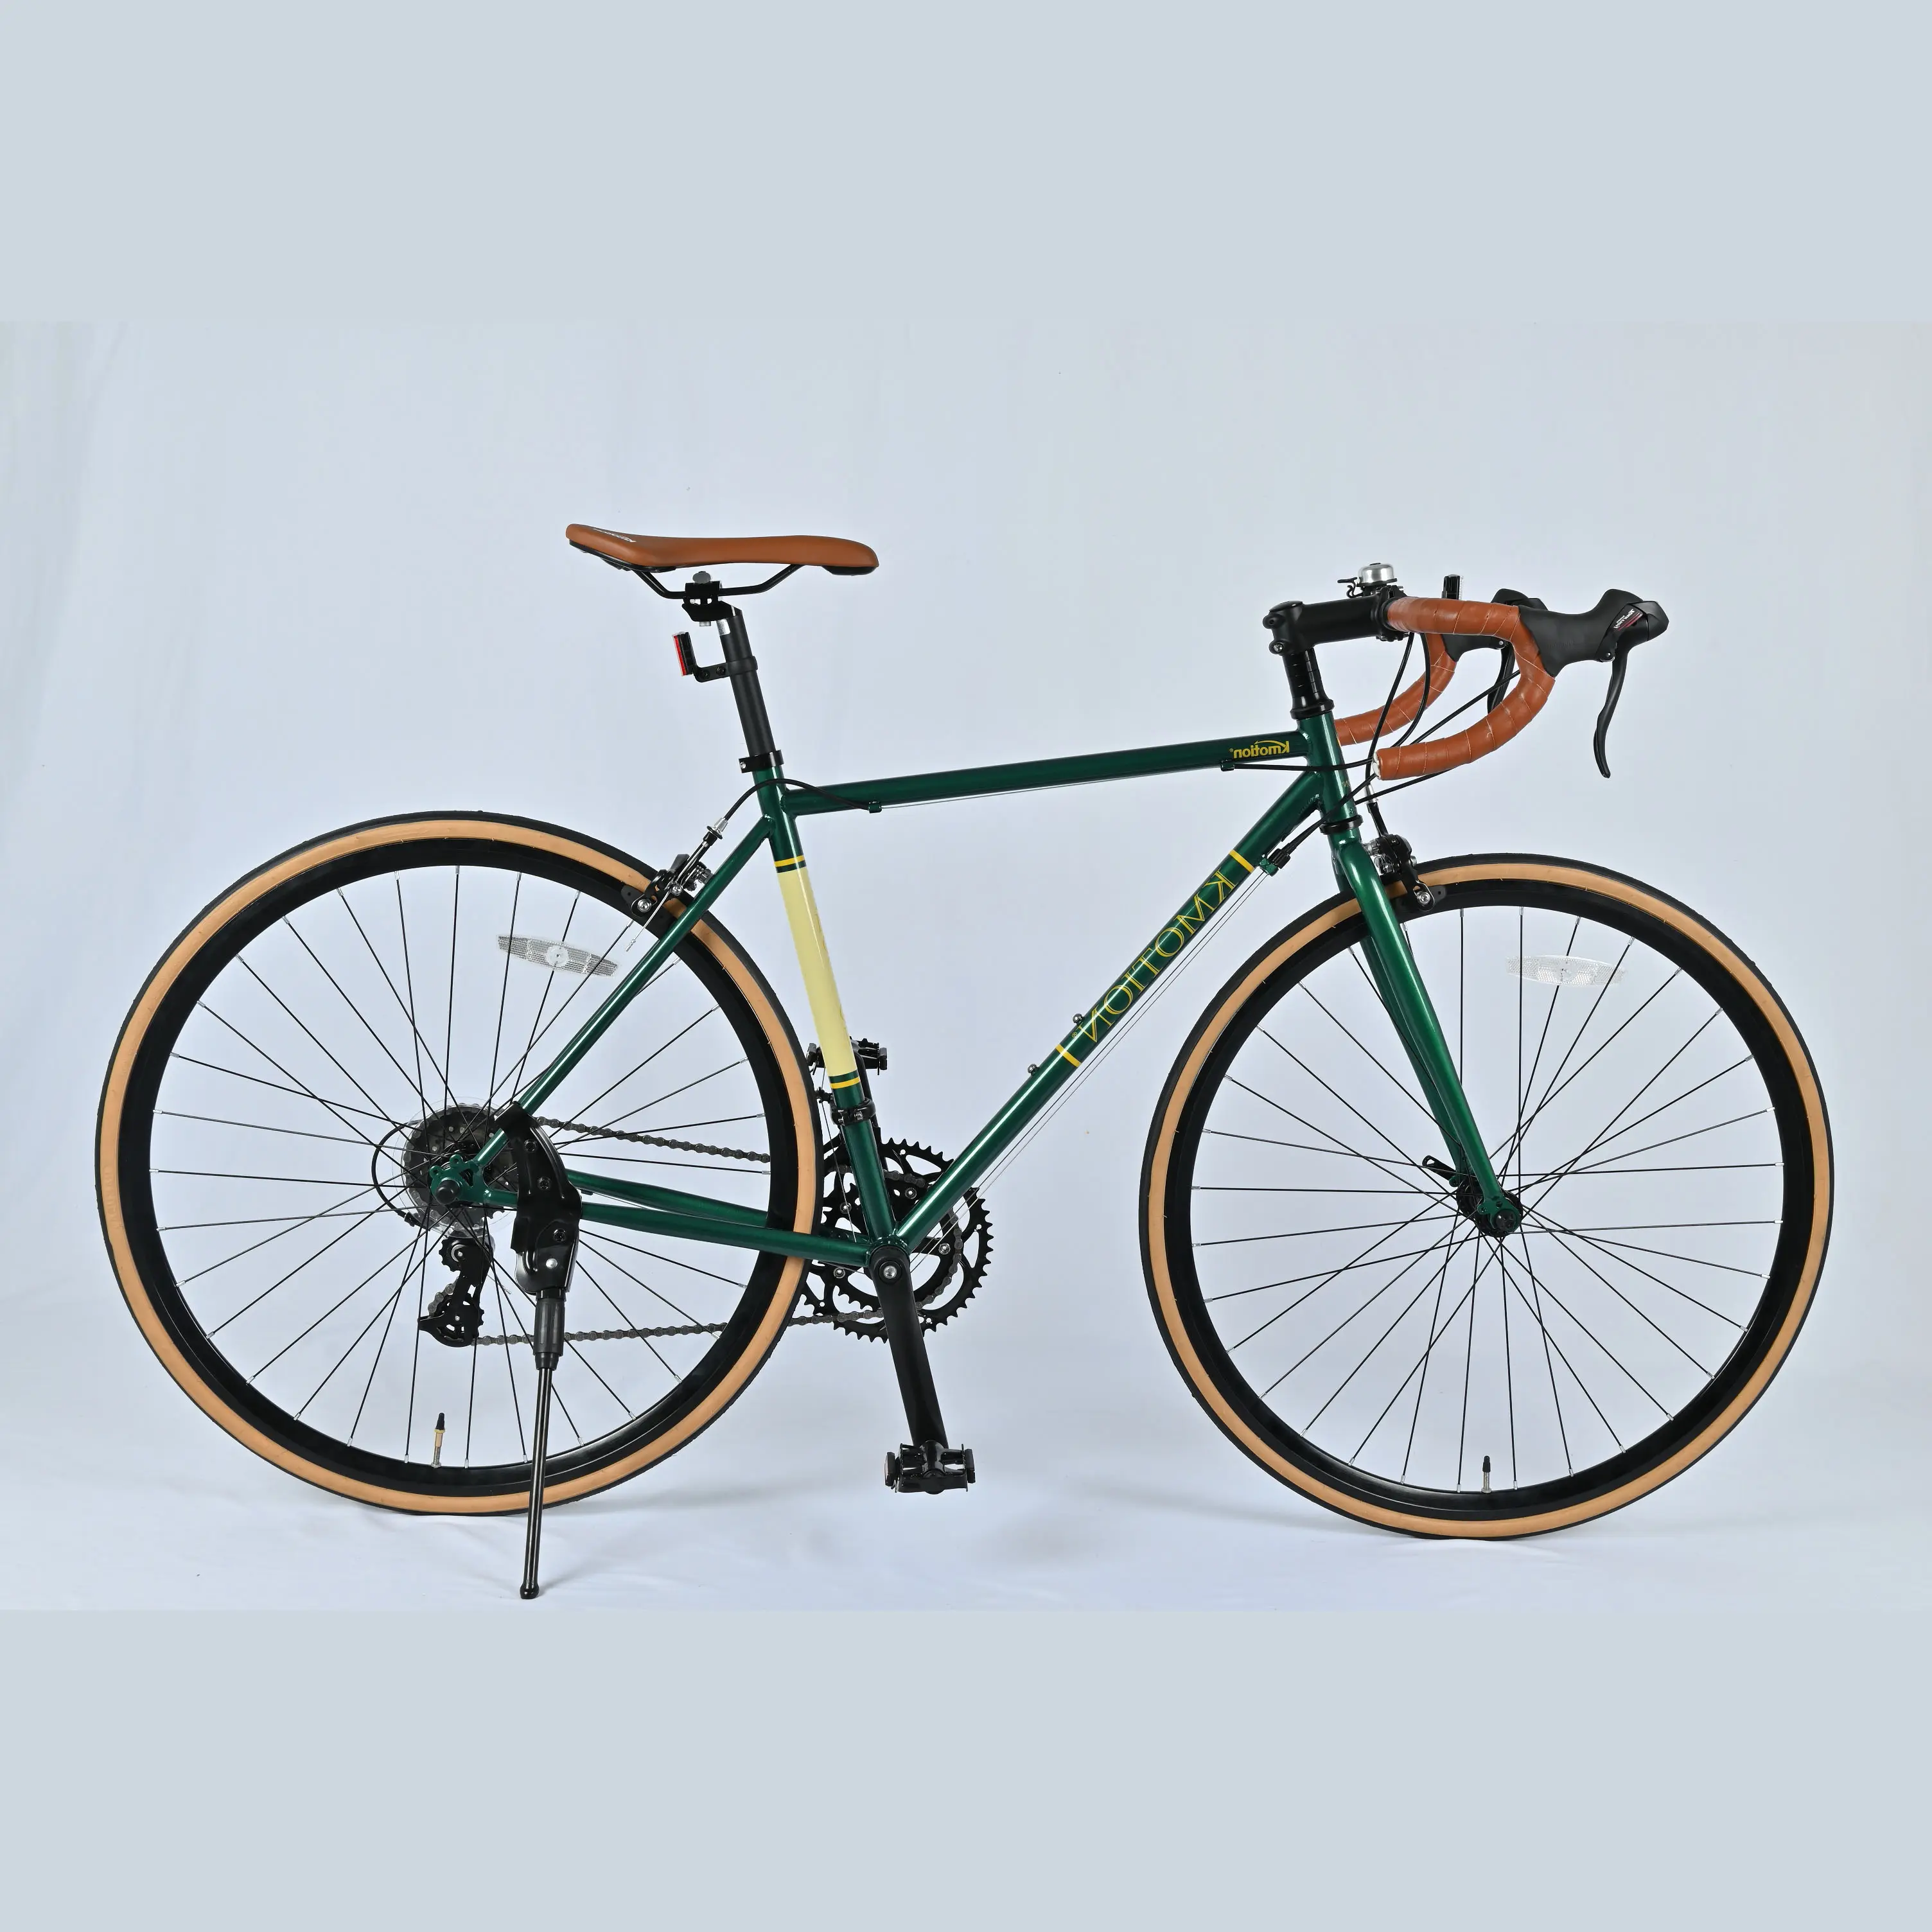 Commercio all'ingrosso di alta qualità in lega di alluminio telaio mountain bike 700c bici da strada per uomo in vendita